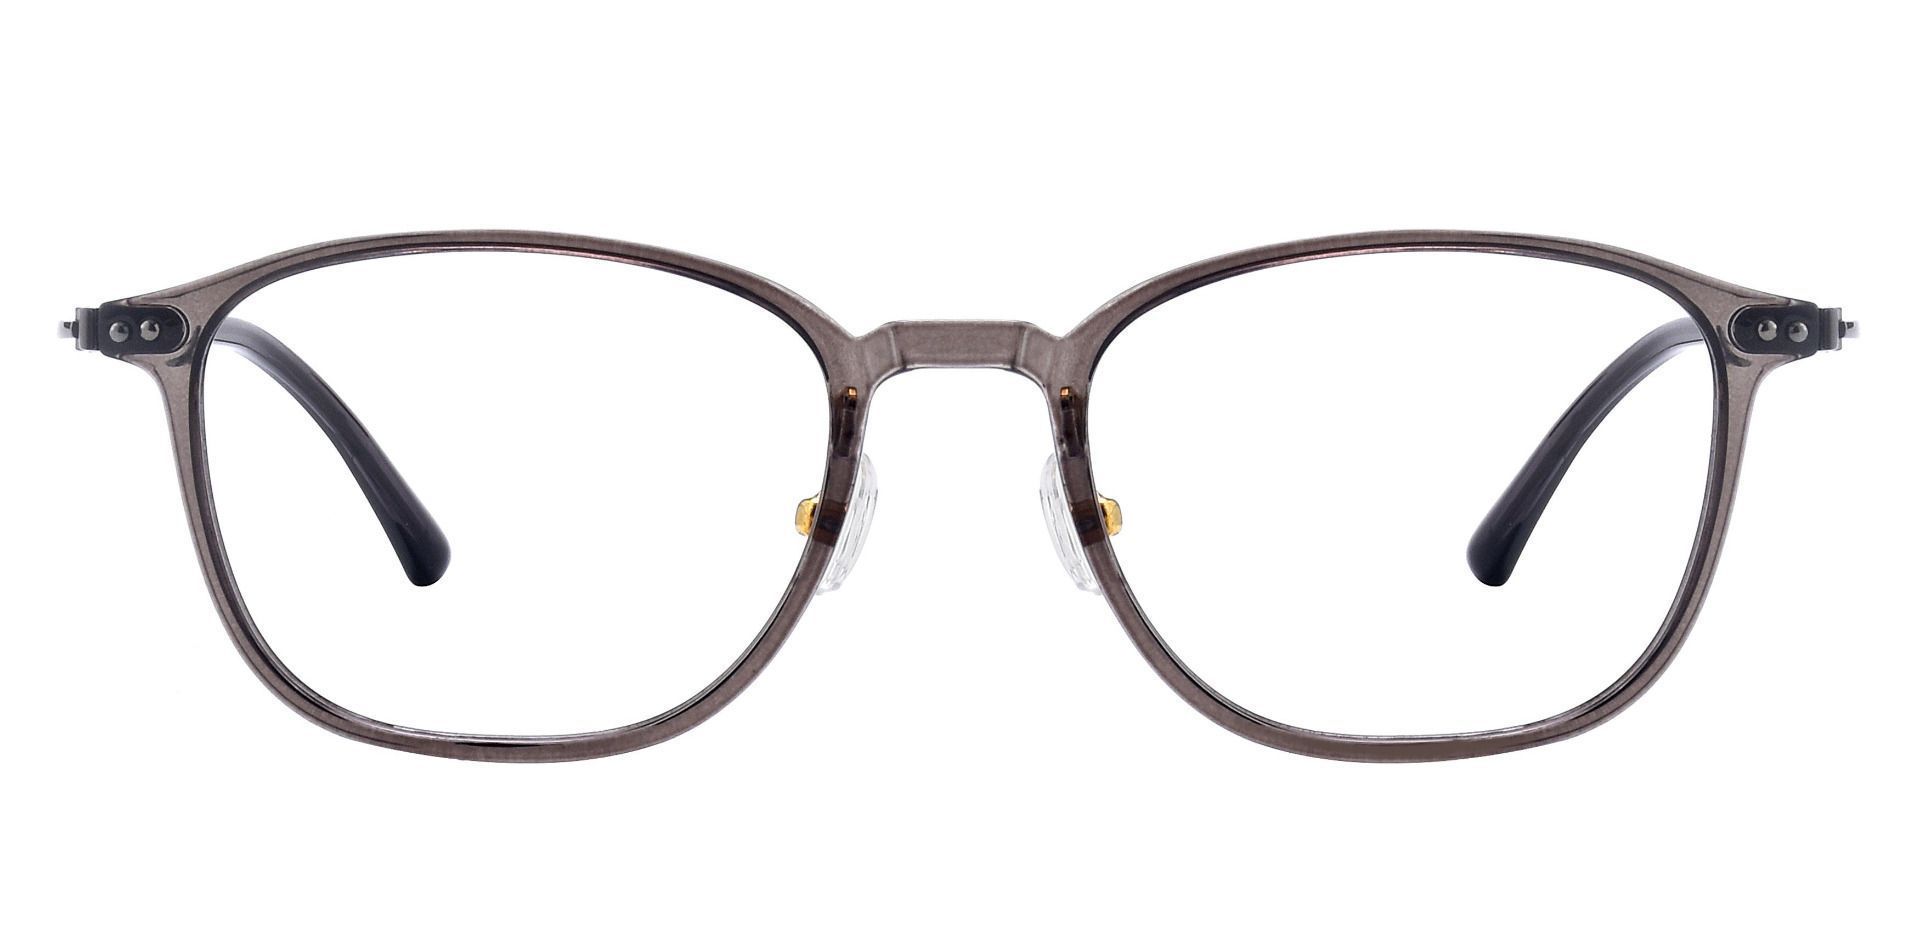 London Oval Eyeglasses Frame - Gray